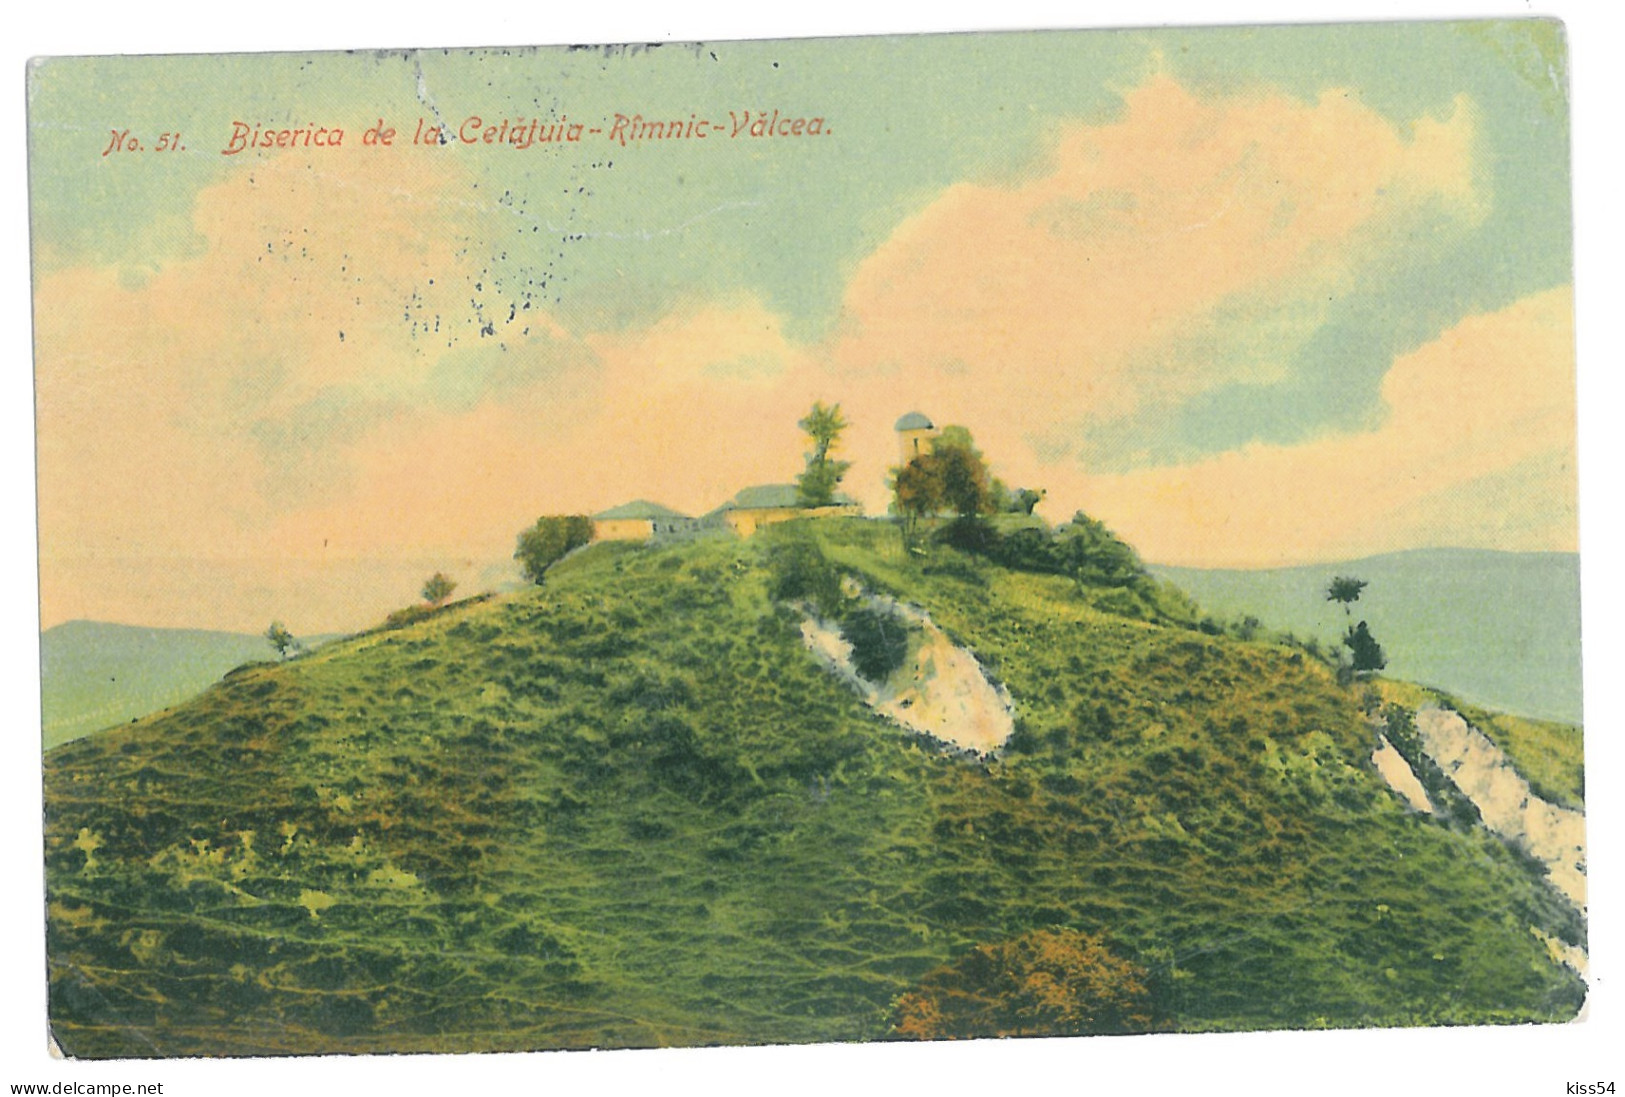 RO 89 - 13821 Rm. VALCEA, Cetatuia Church, Romania - Old Postcard - Used - 1917 - Romania